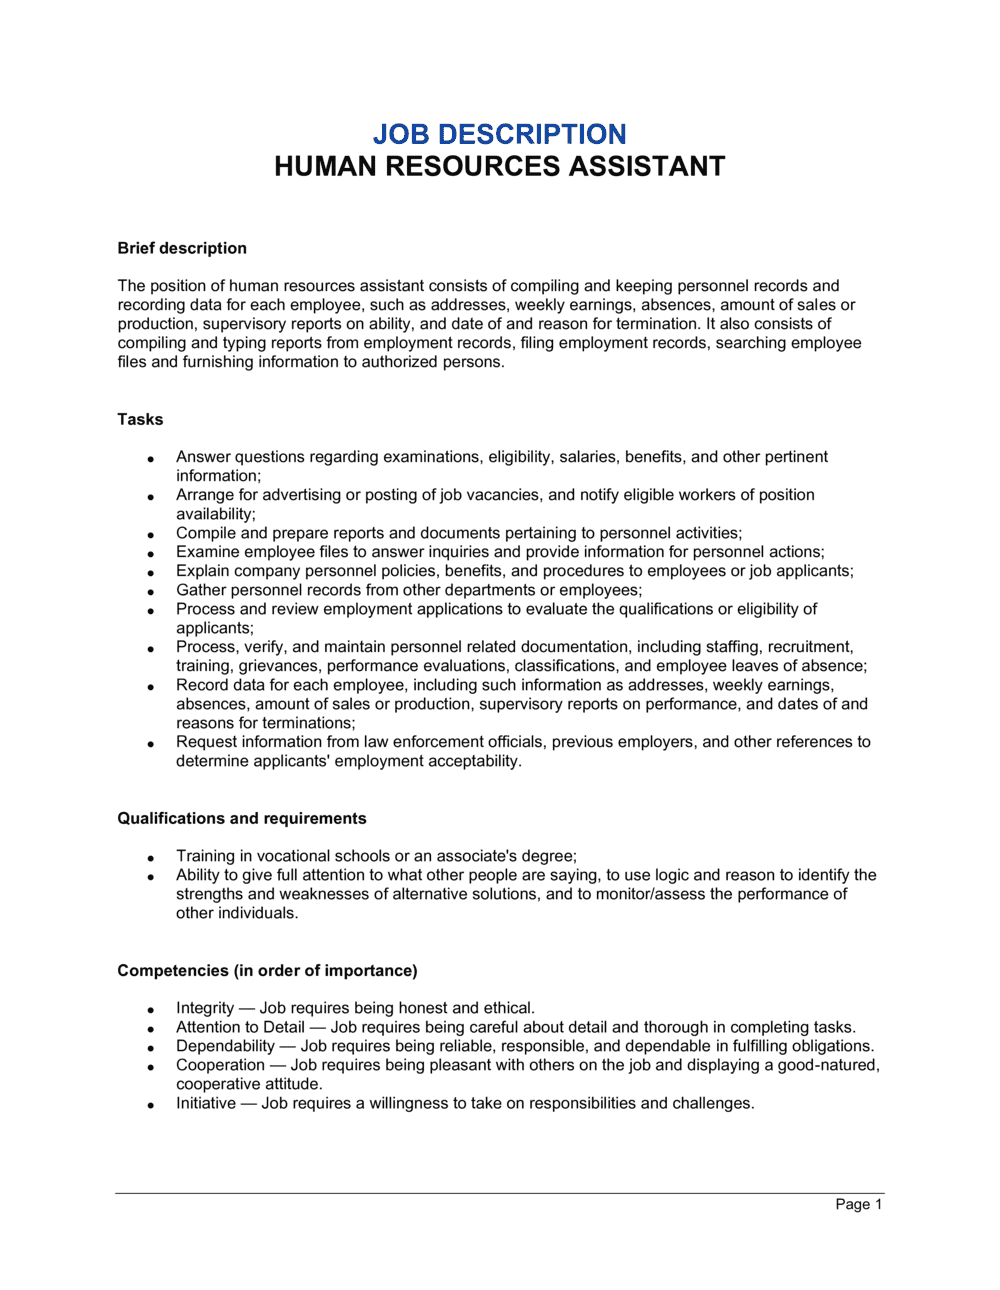 Human Resources Assistant Job Description Template  by Business  For Hr Job Description Template For Hr Job Description Template